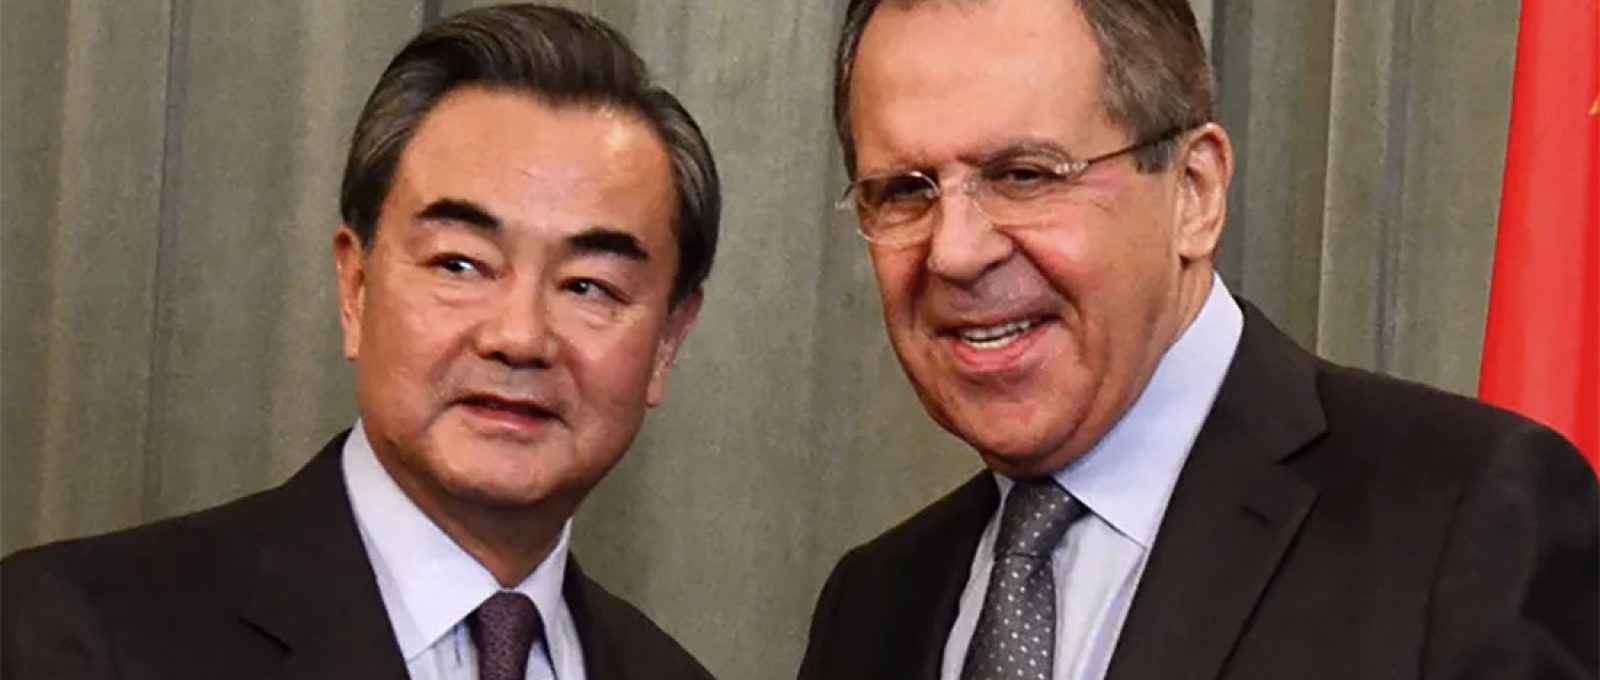 Os ministros das Relações Exteriores da China, Wang Yi, e da Rússia, Sergey Lavrov, em 2016 (Ministério das Relações Exteriores da Rússia/CC BY-NC-SA 2.0).